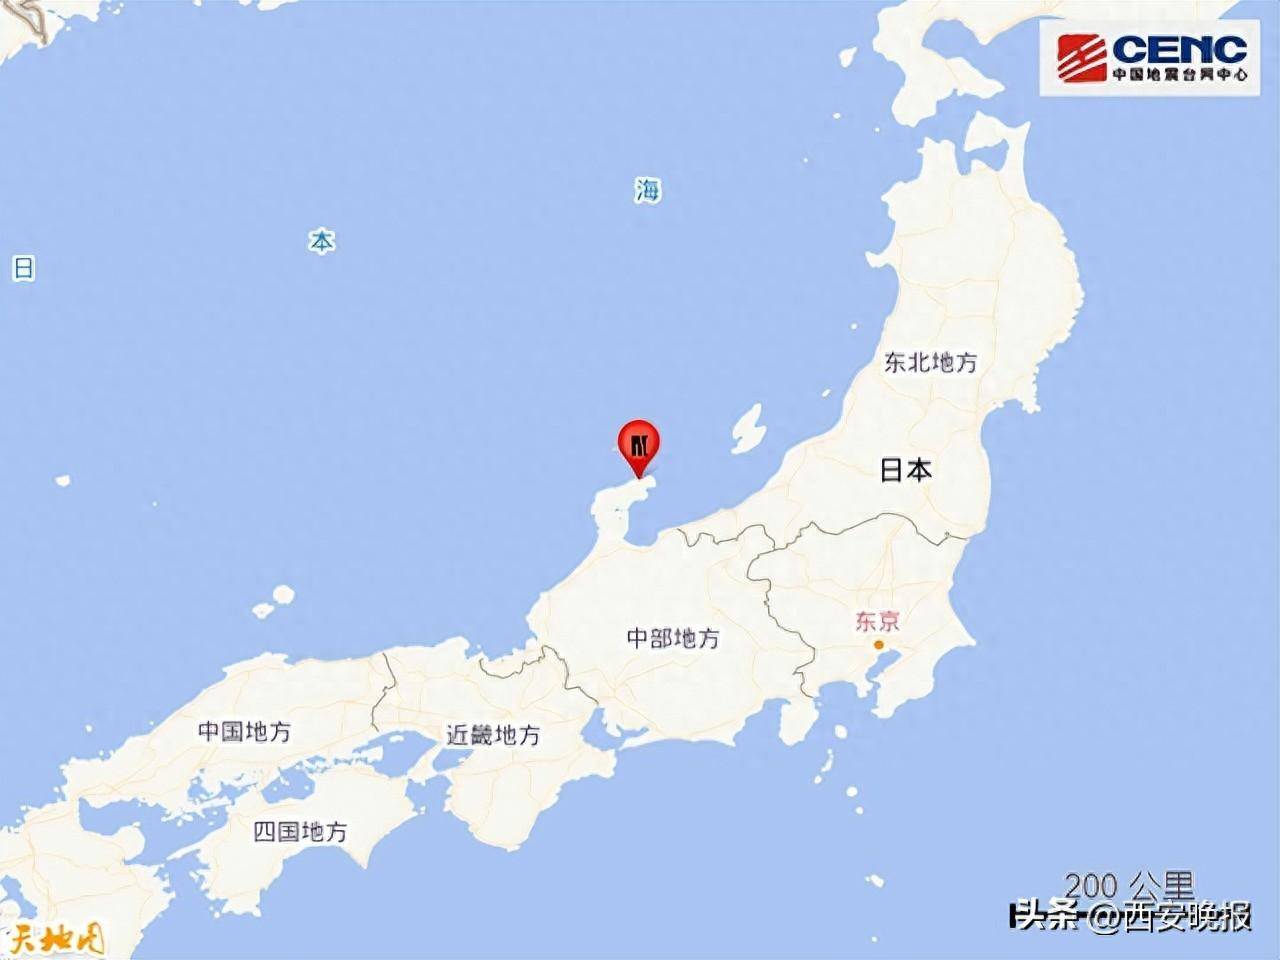 日本福岛近海发生7.3级地震|今日国际要闻